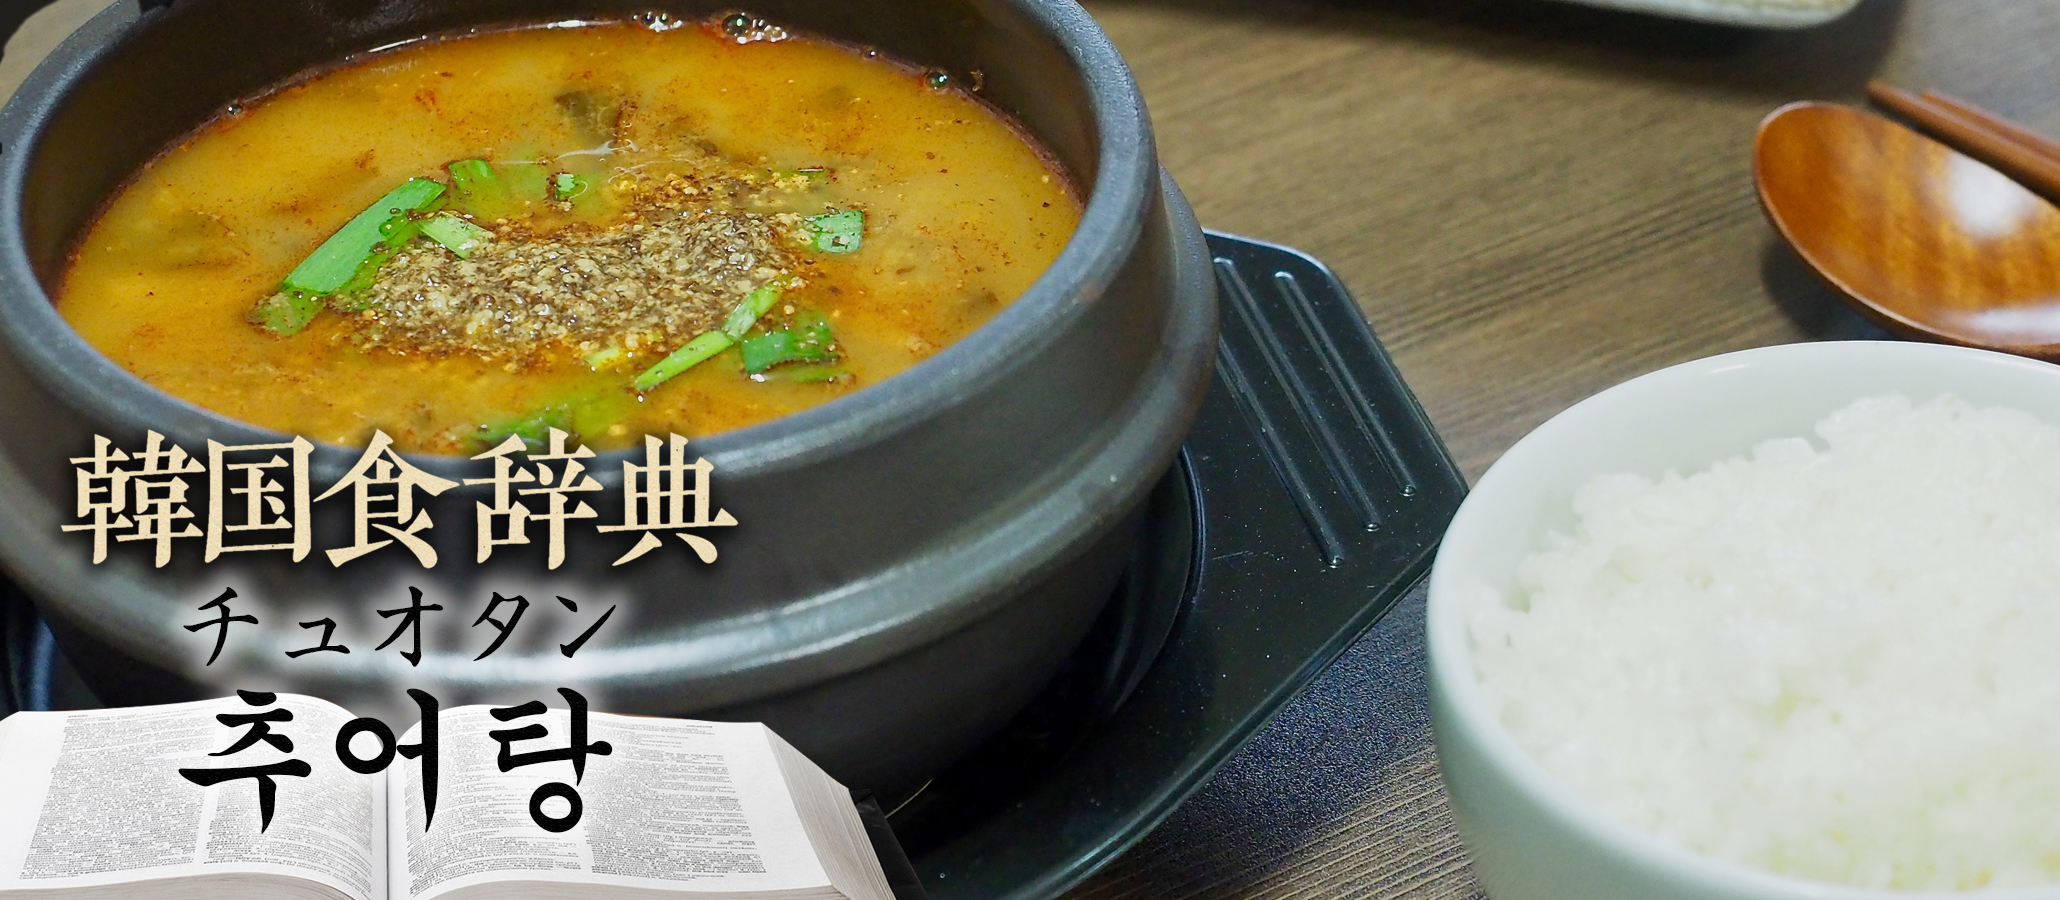 韓国食辞典「チュオタン」